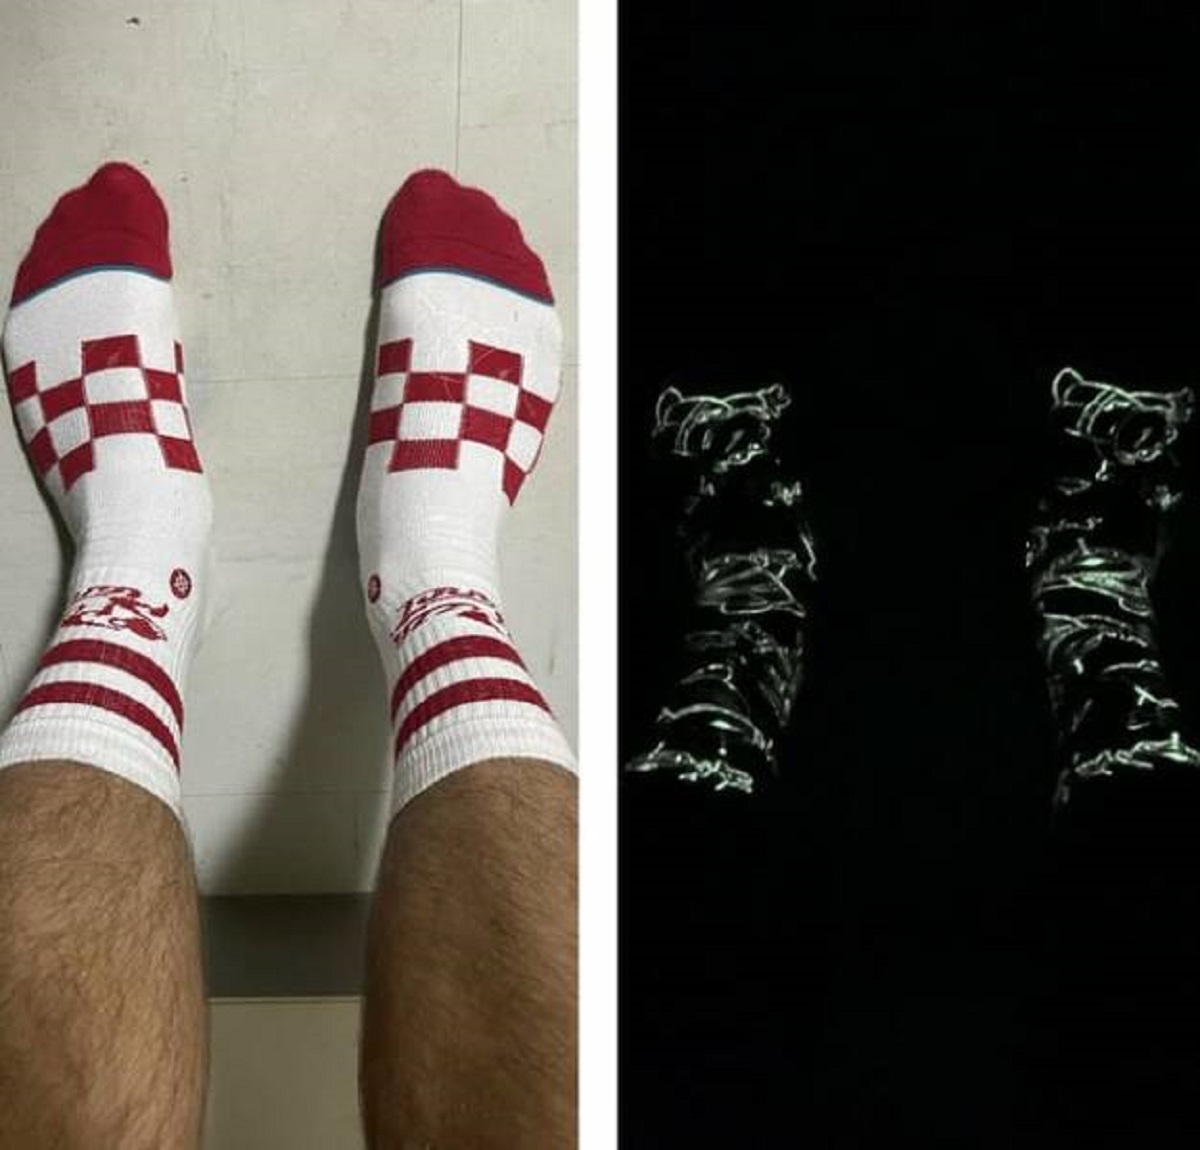 "My socks glow in the dark"